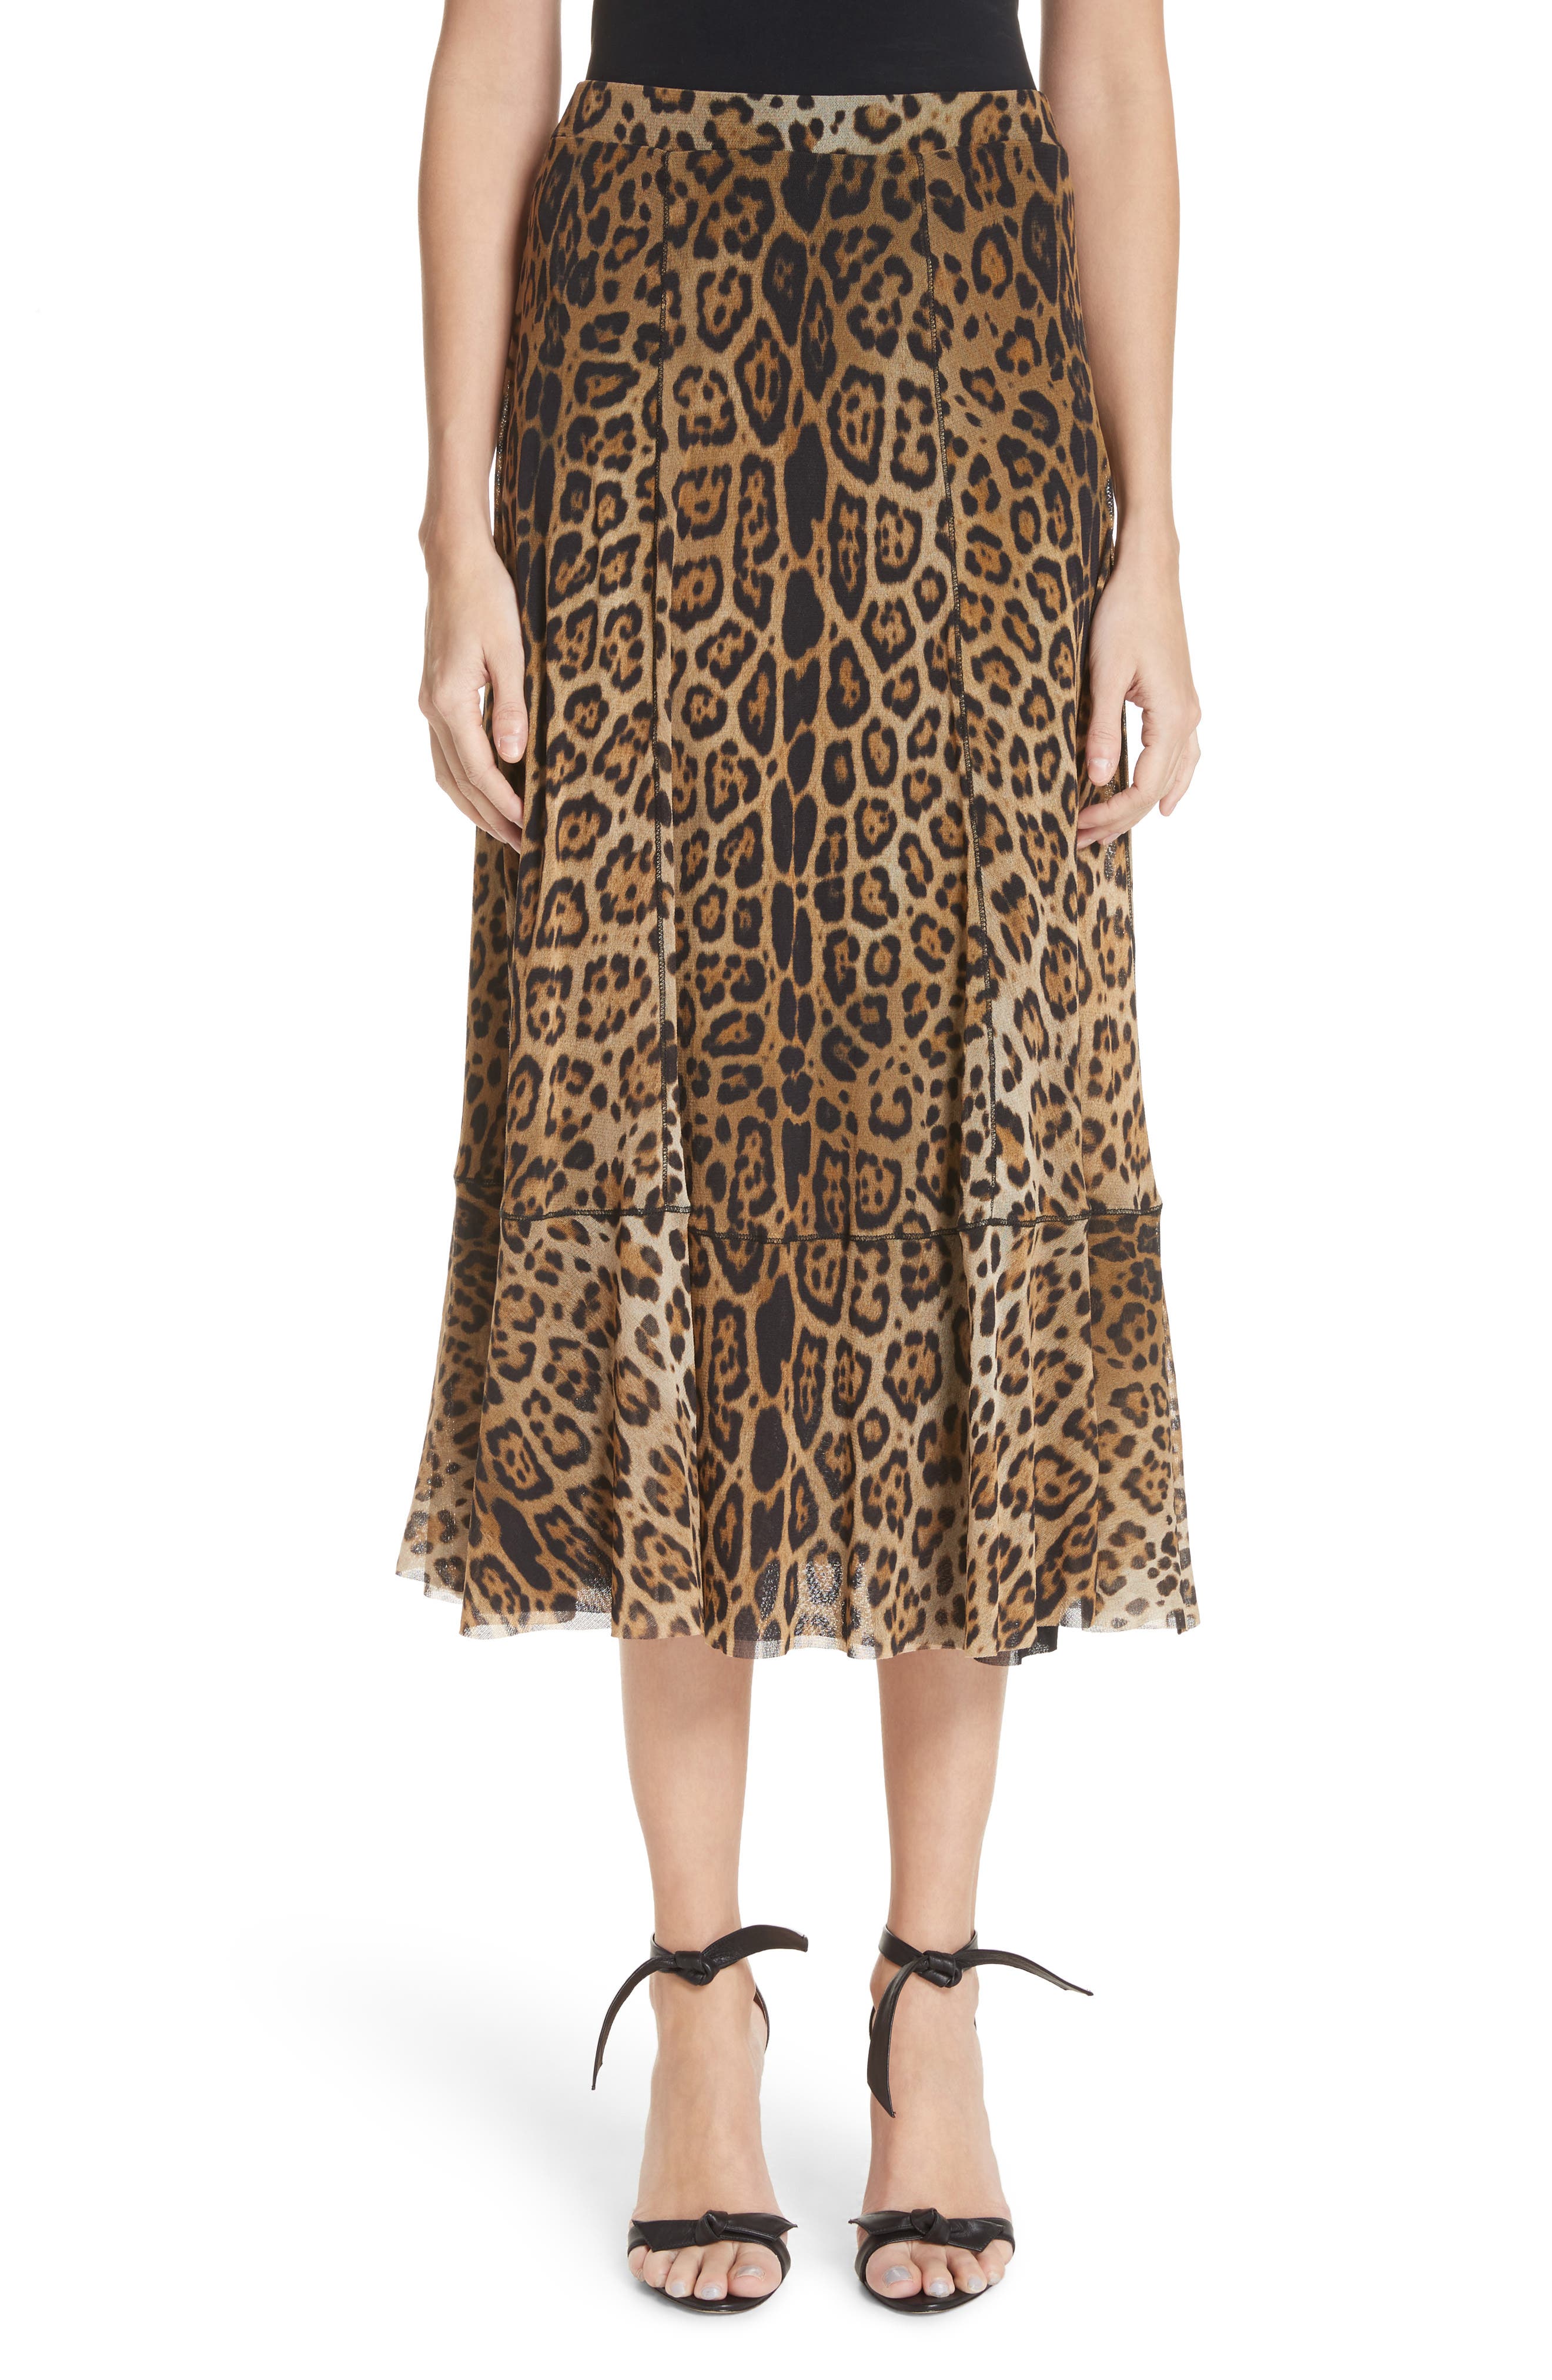 jf2021,leopard print midi skirt 9mm 